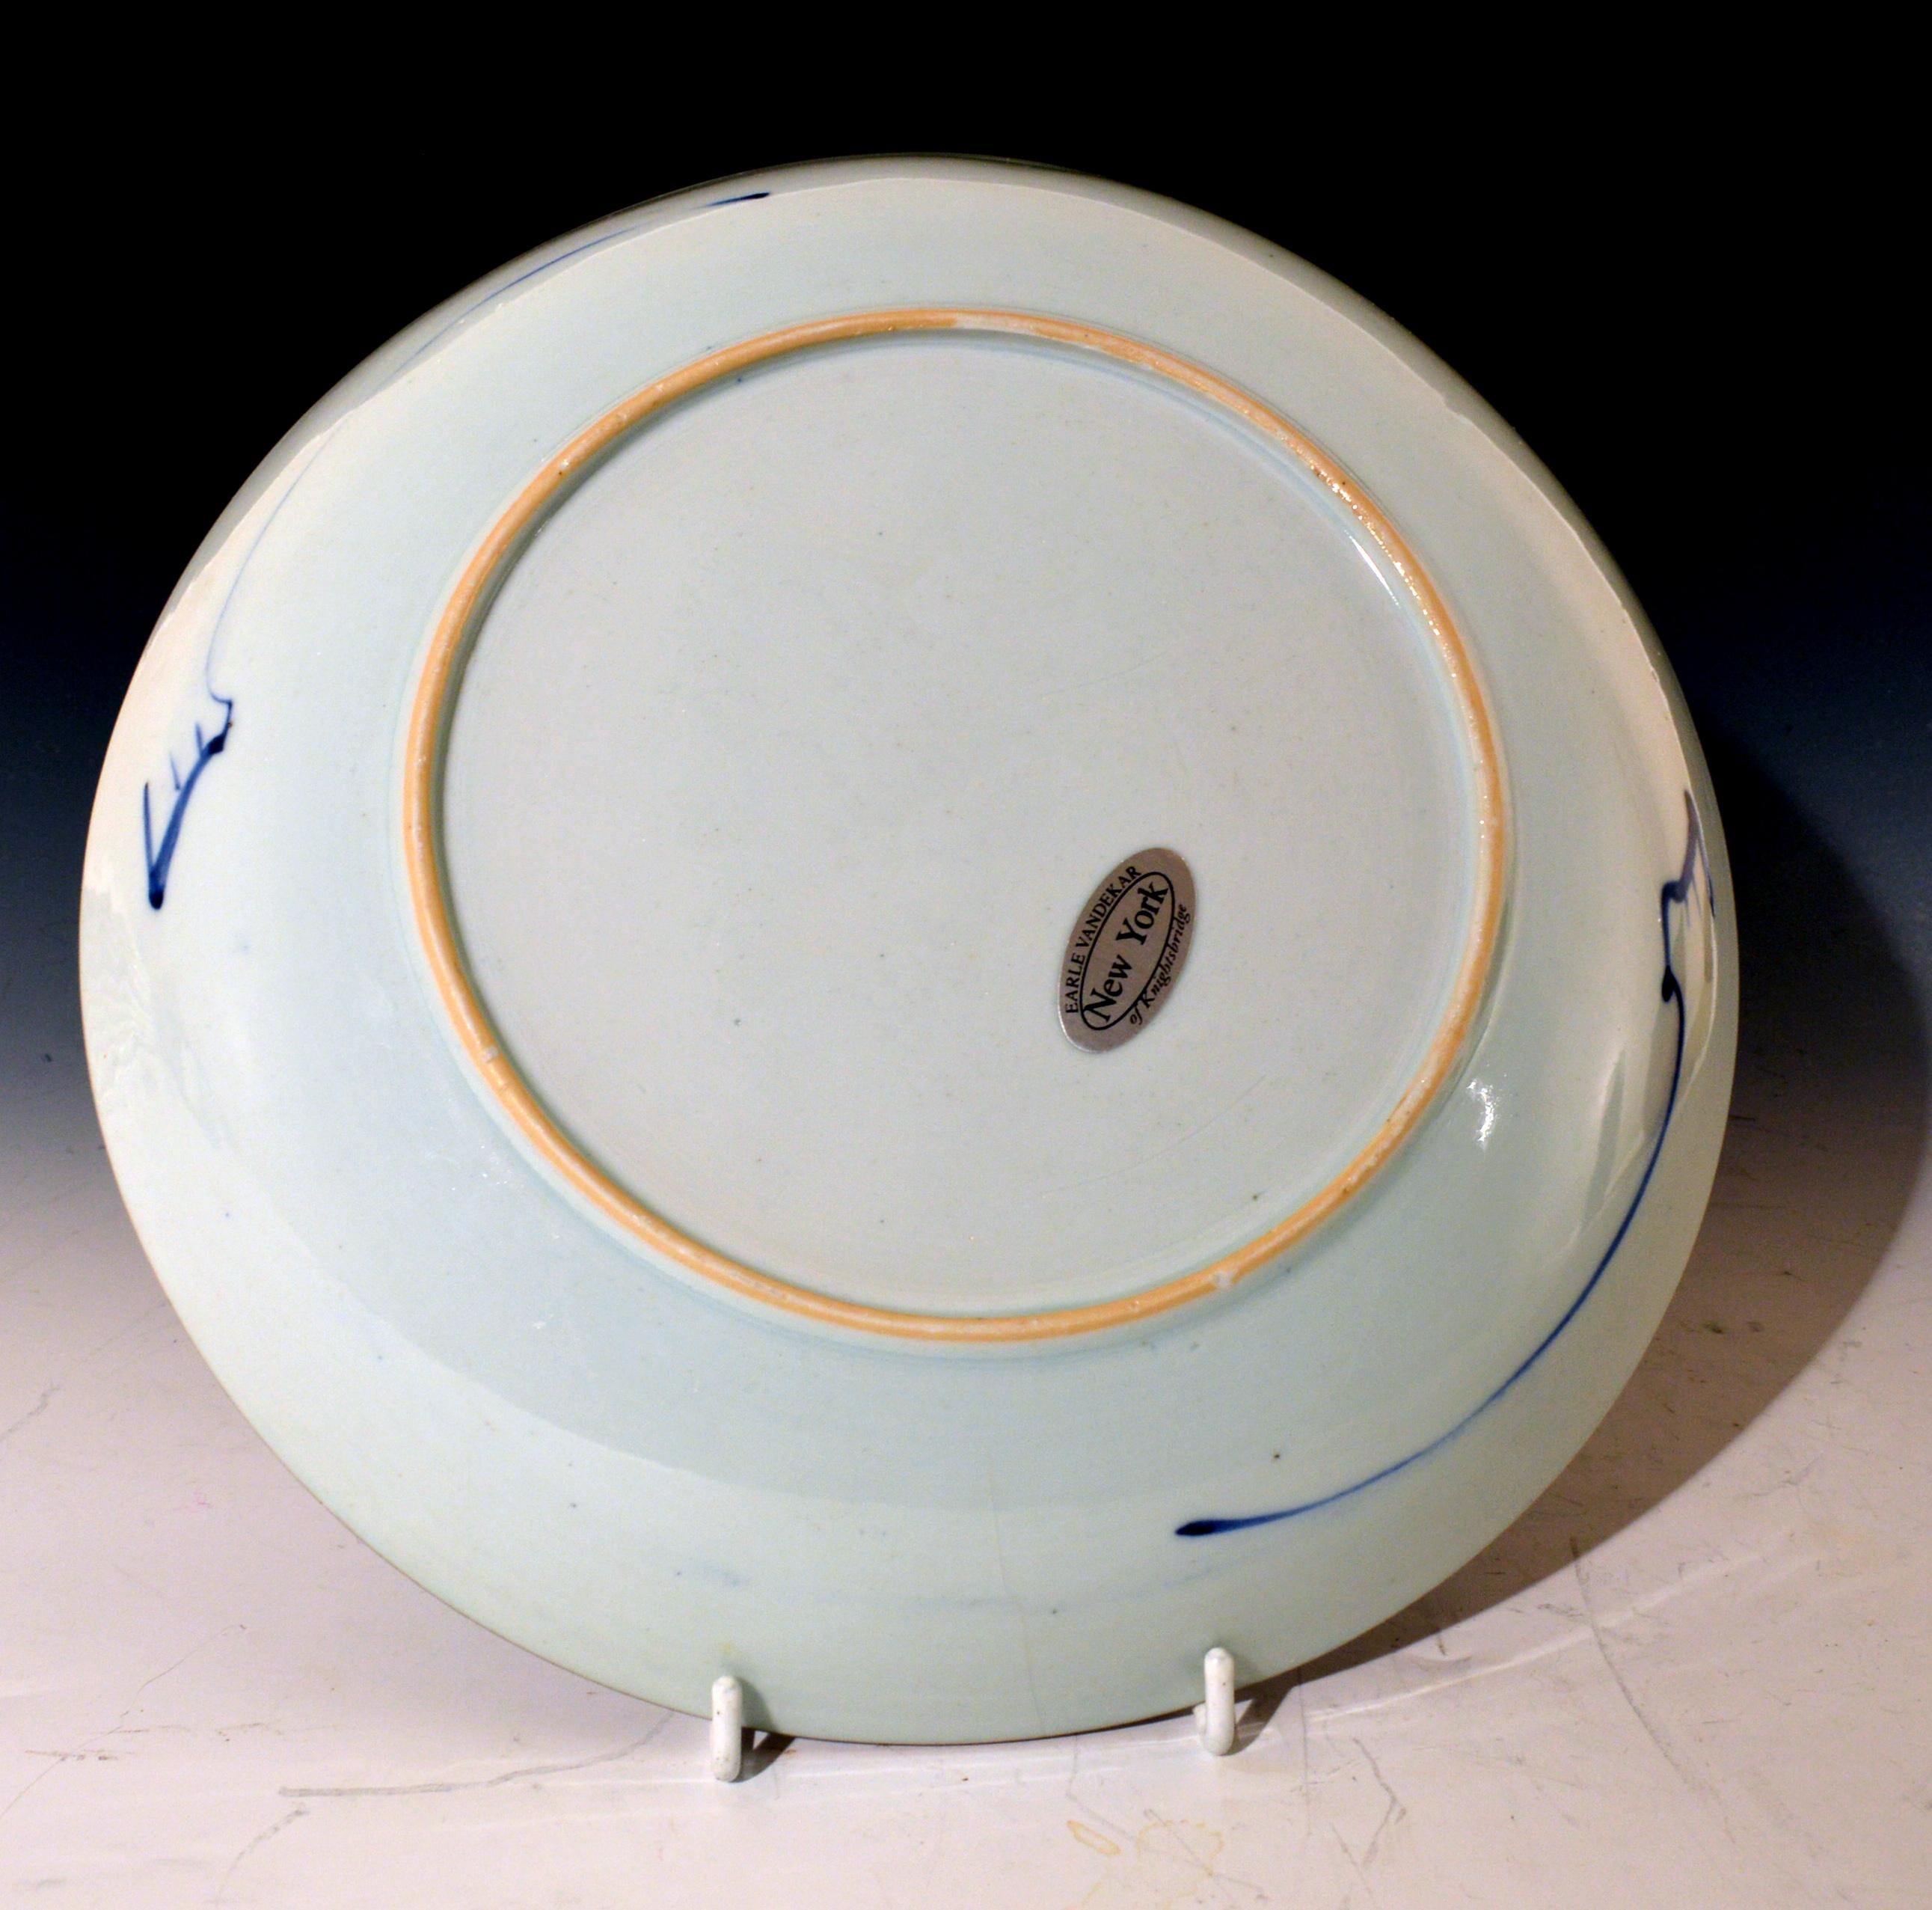 Chinese Export Imari Large Porcelain Saucer Dish, circa 1770 1